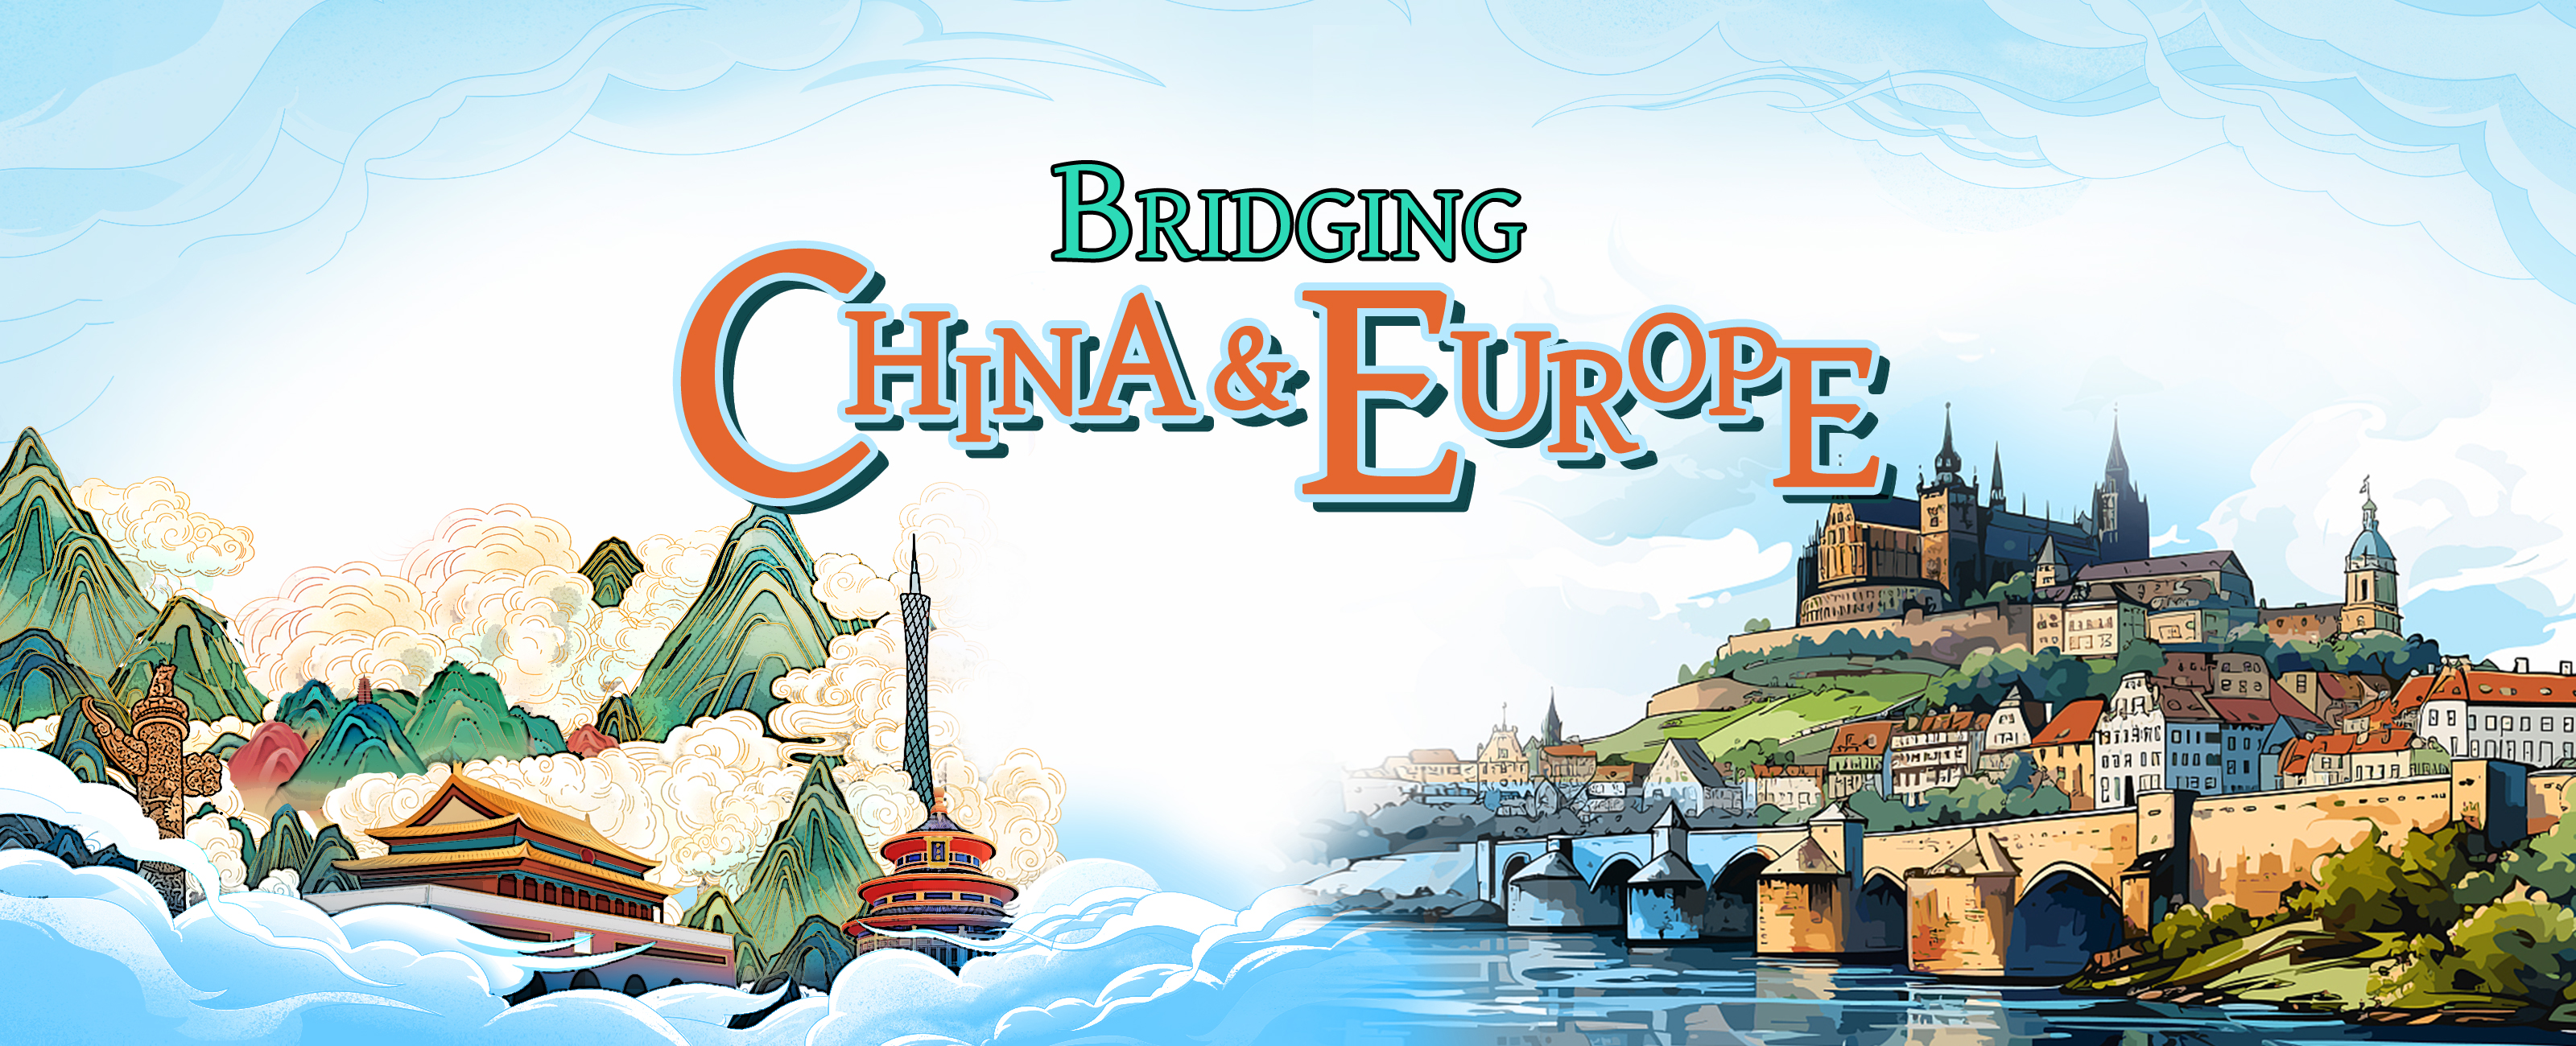 Bridging China and Europe